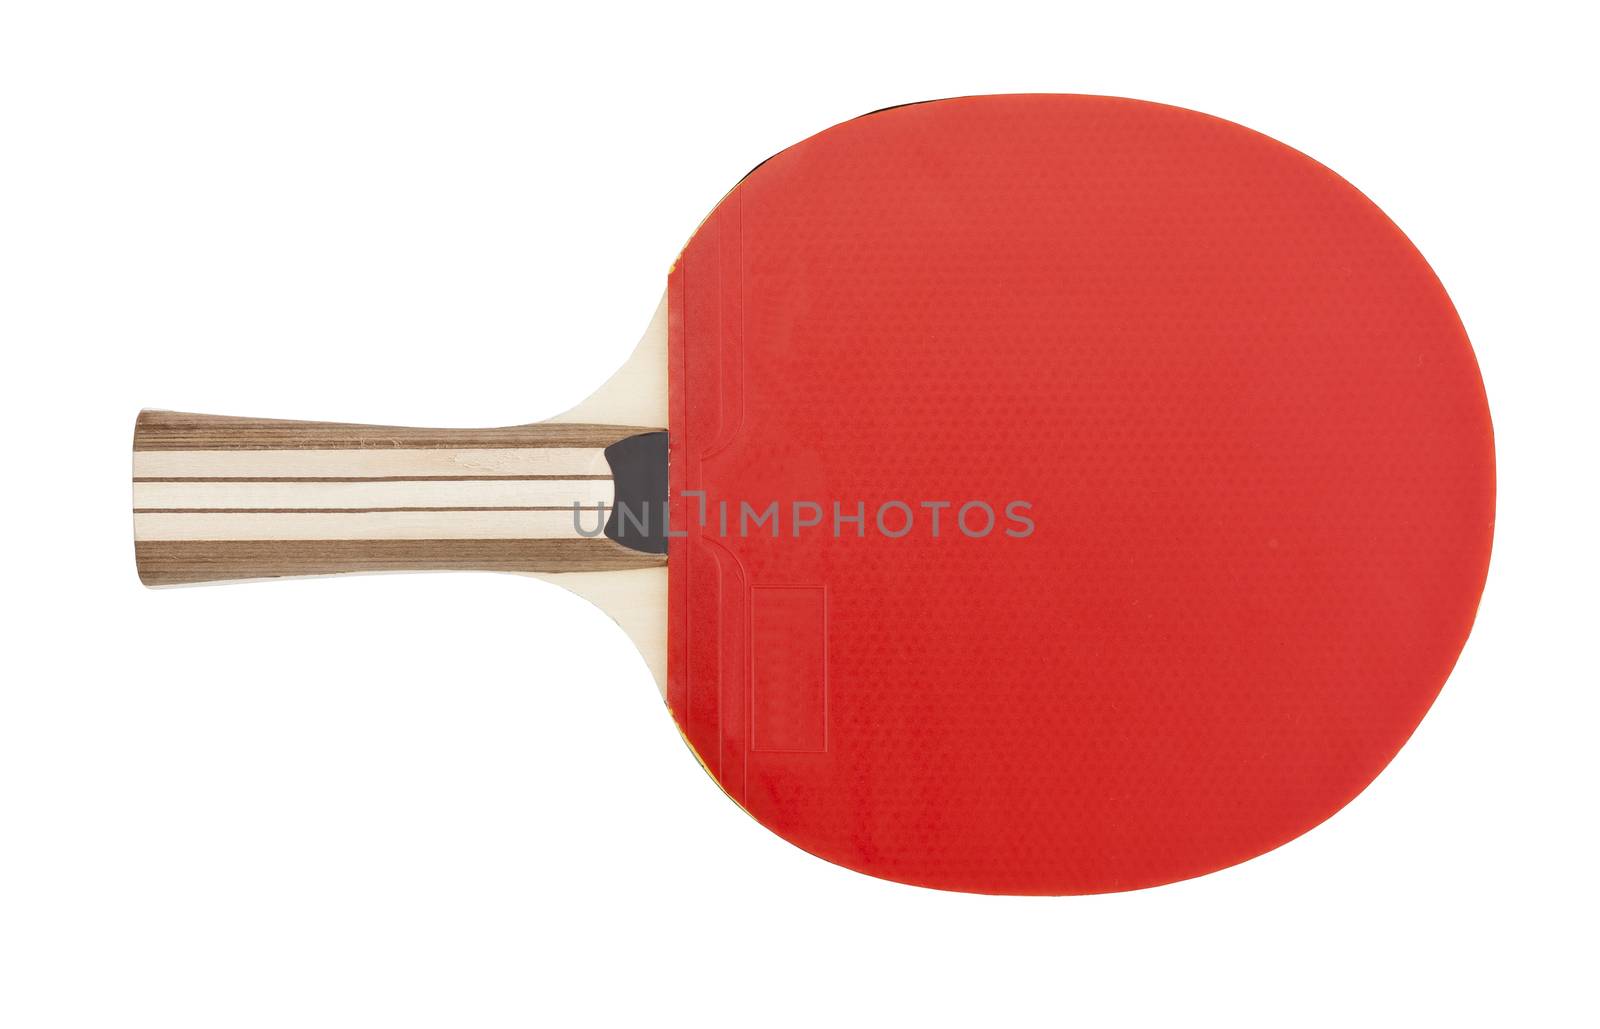 Table Tennis Racket by gemenacom